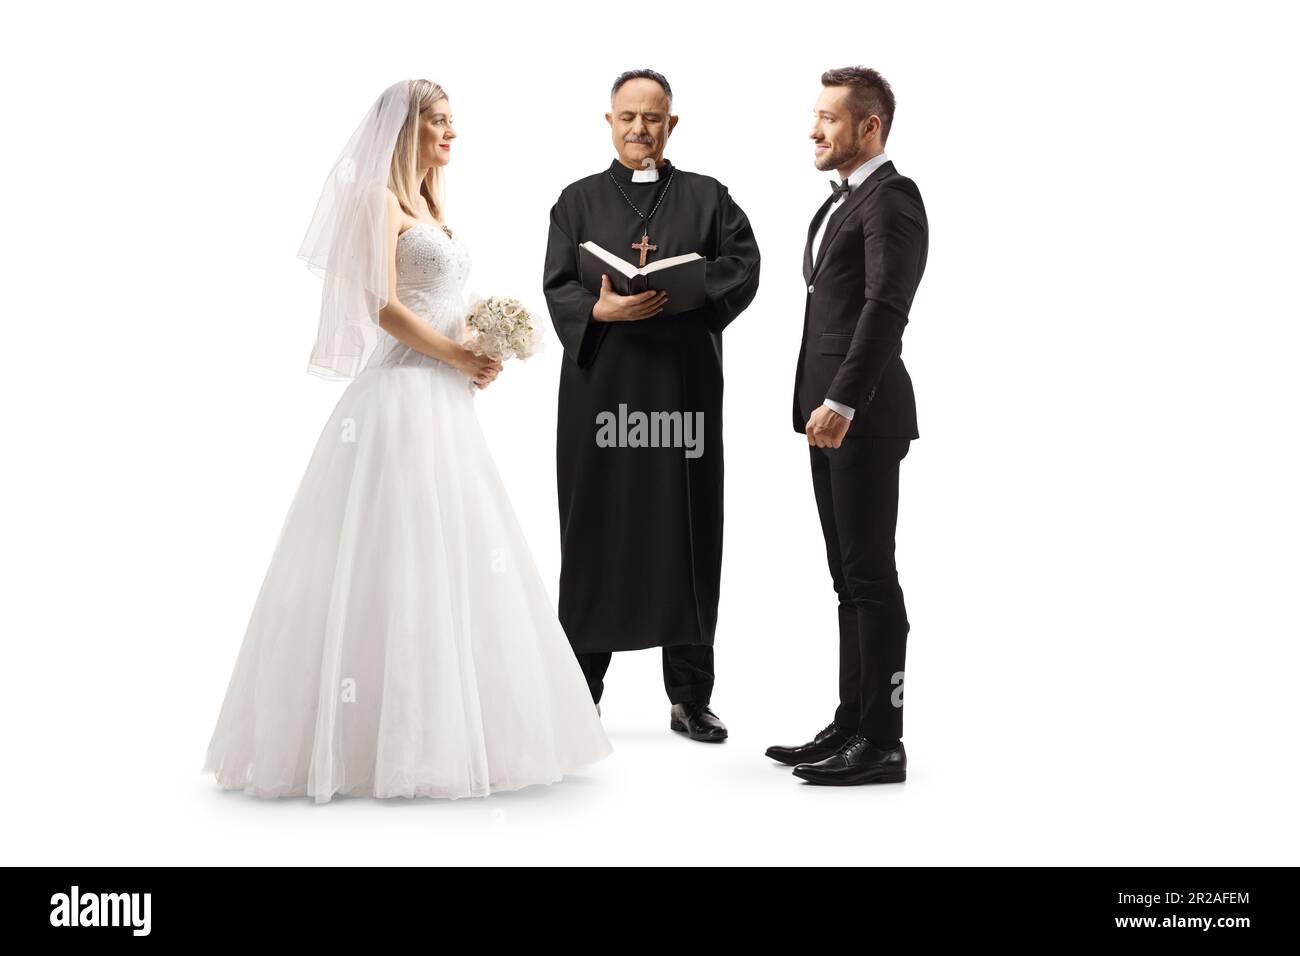 Sacerdote oficiante declarando novia y novio como una pareja casada aislada sobre fondo blanco Foto de stock